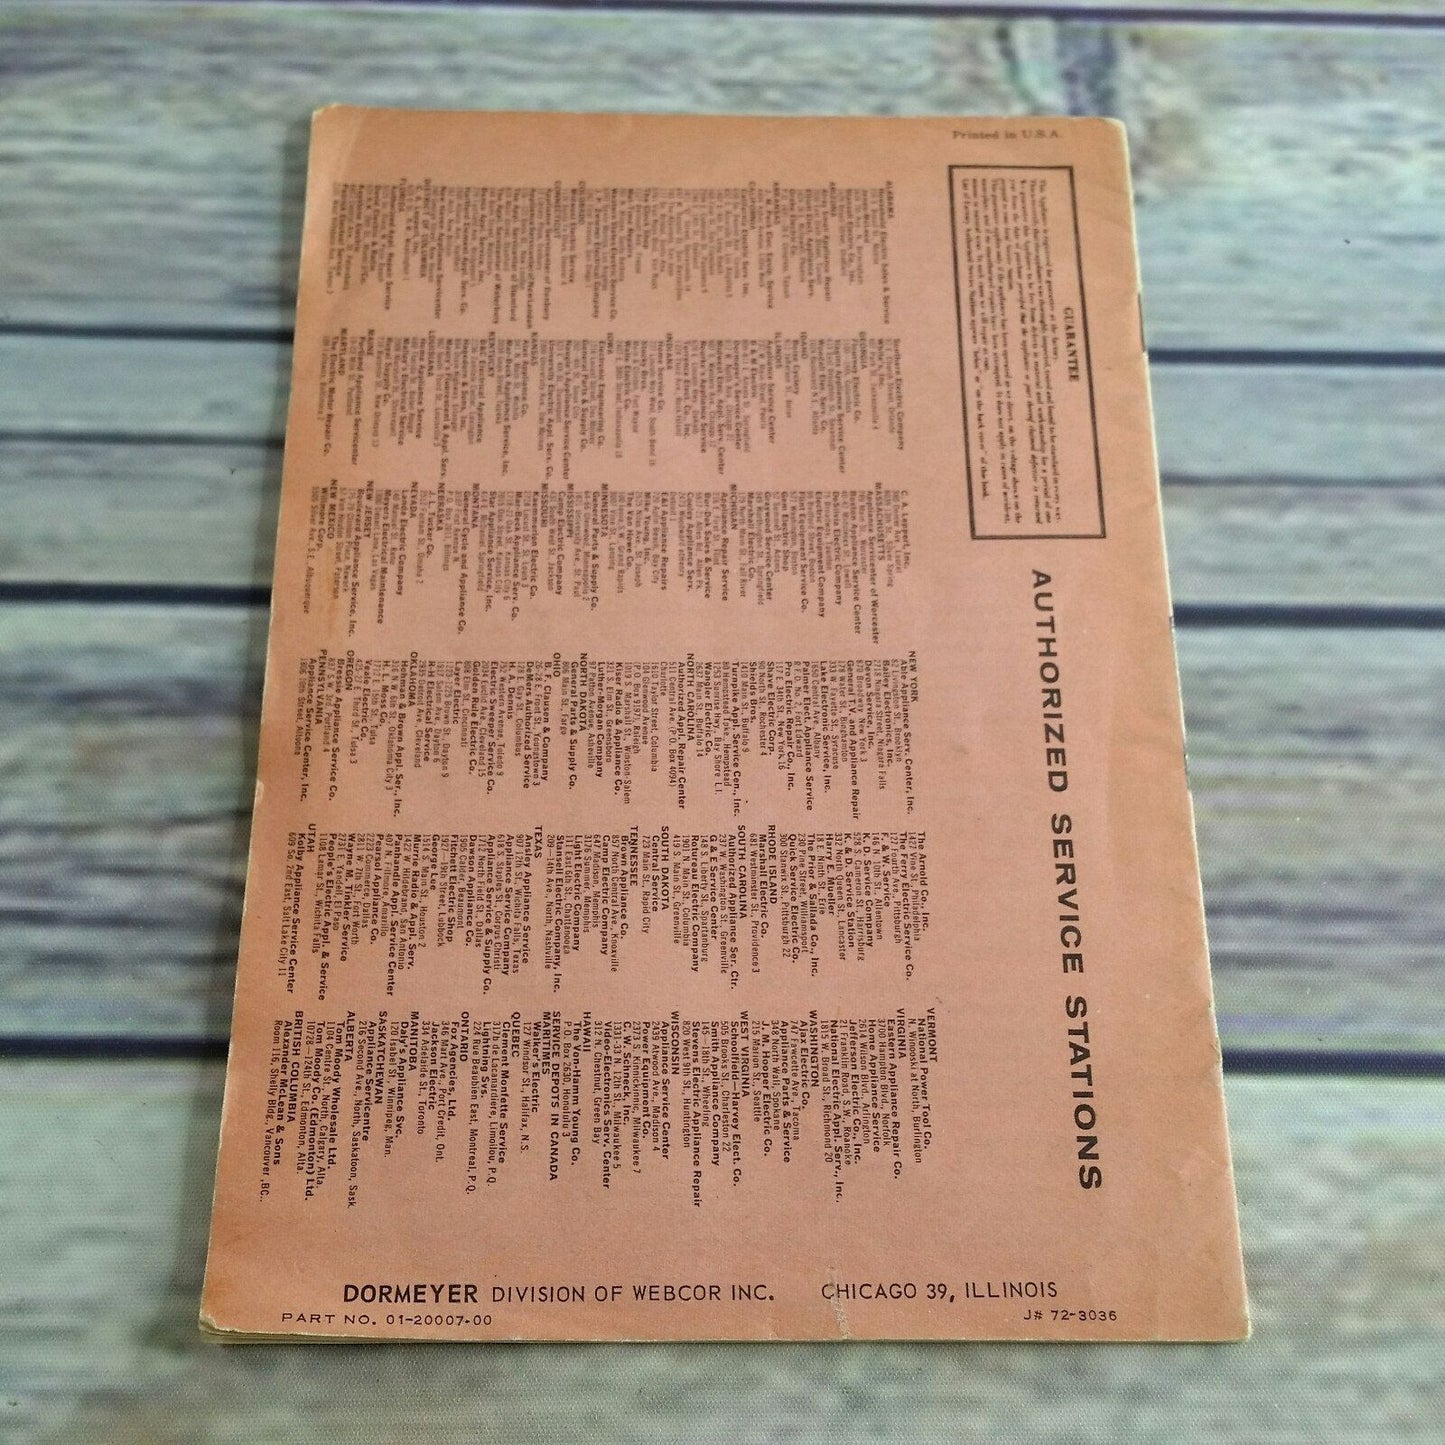 Dormeyer Fri Way Skillet Vintage Cookbook Recipes and Instructions Manual 1950s Paperback Booklet Fri-Way